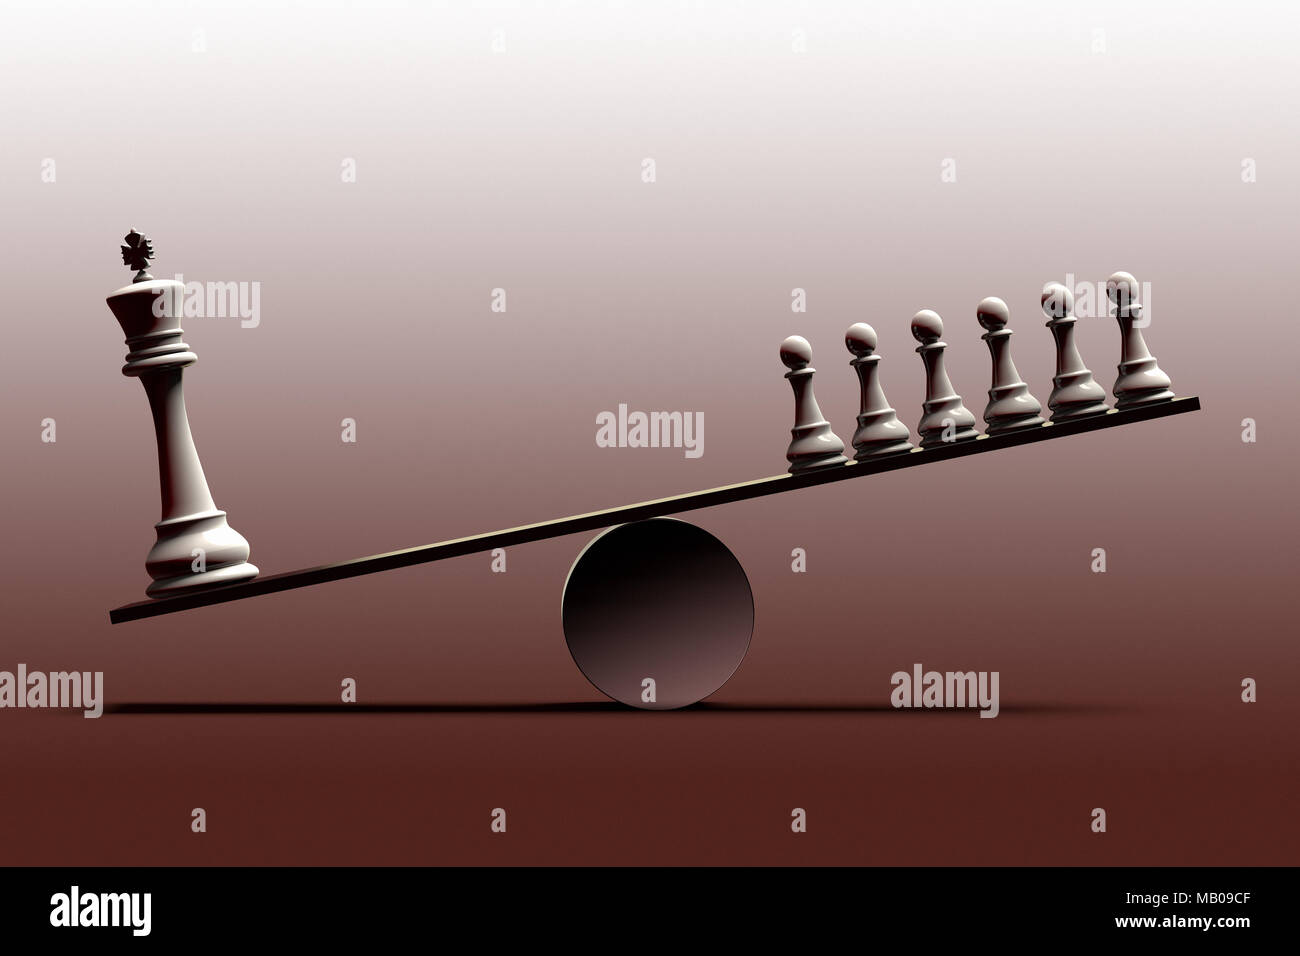 Representación 3D de una representación onceptual de desigualdad social y el desequilibrio entre las clases sociales representadas con piezas de ajedrez Foto de stock